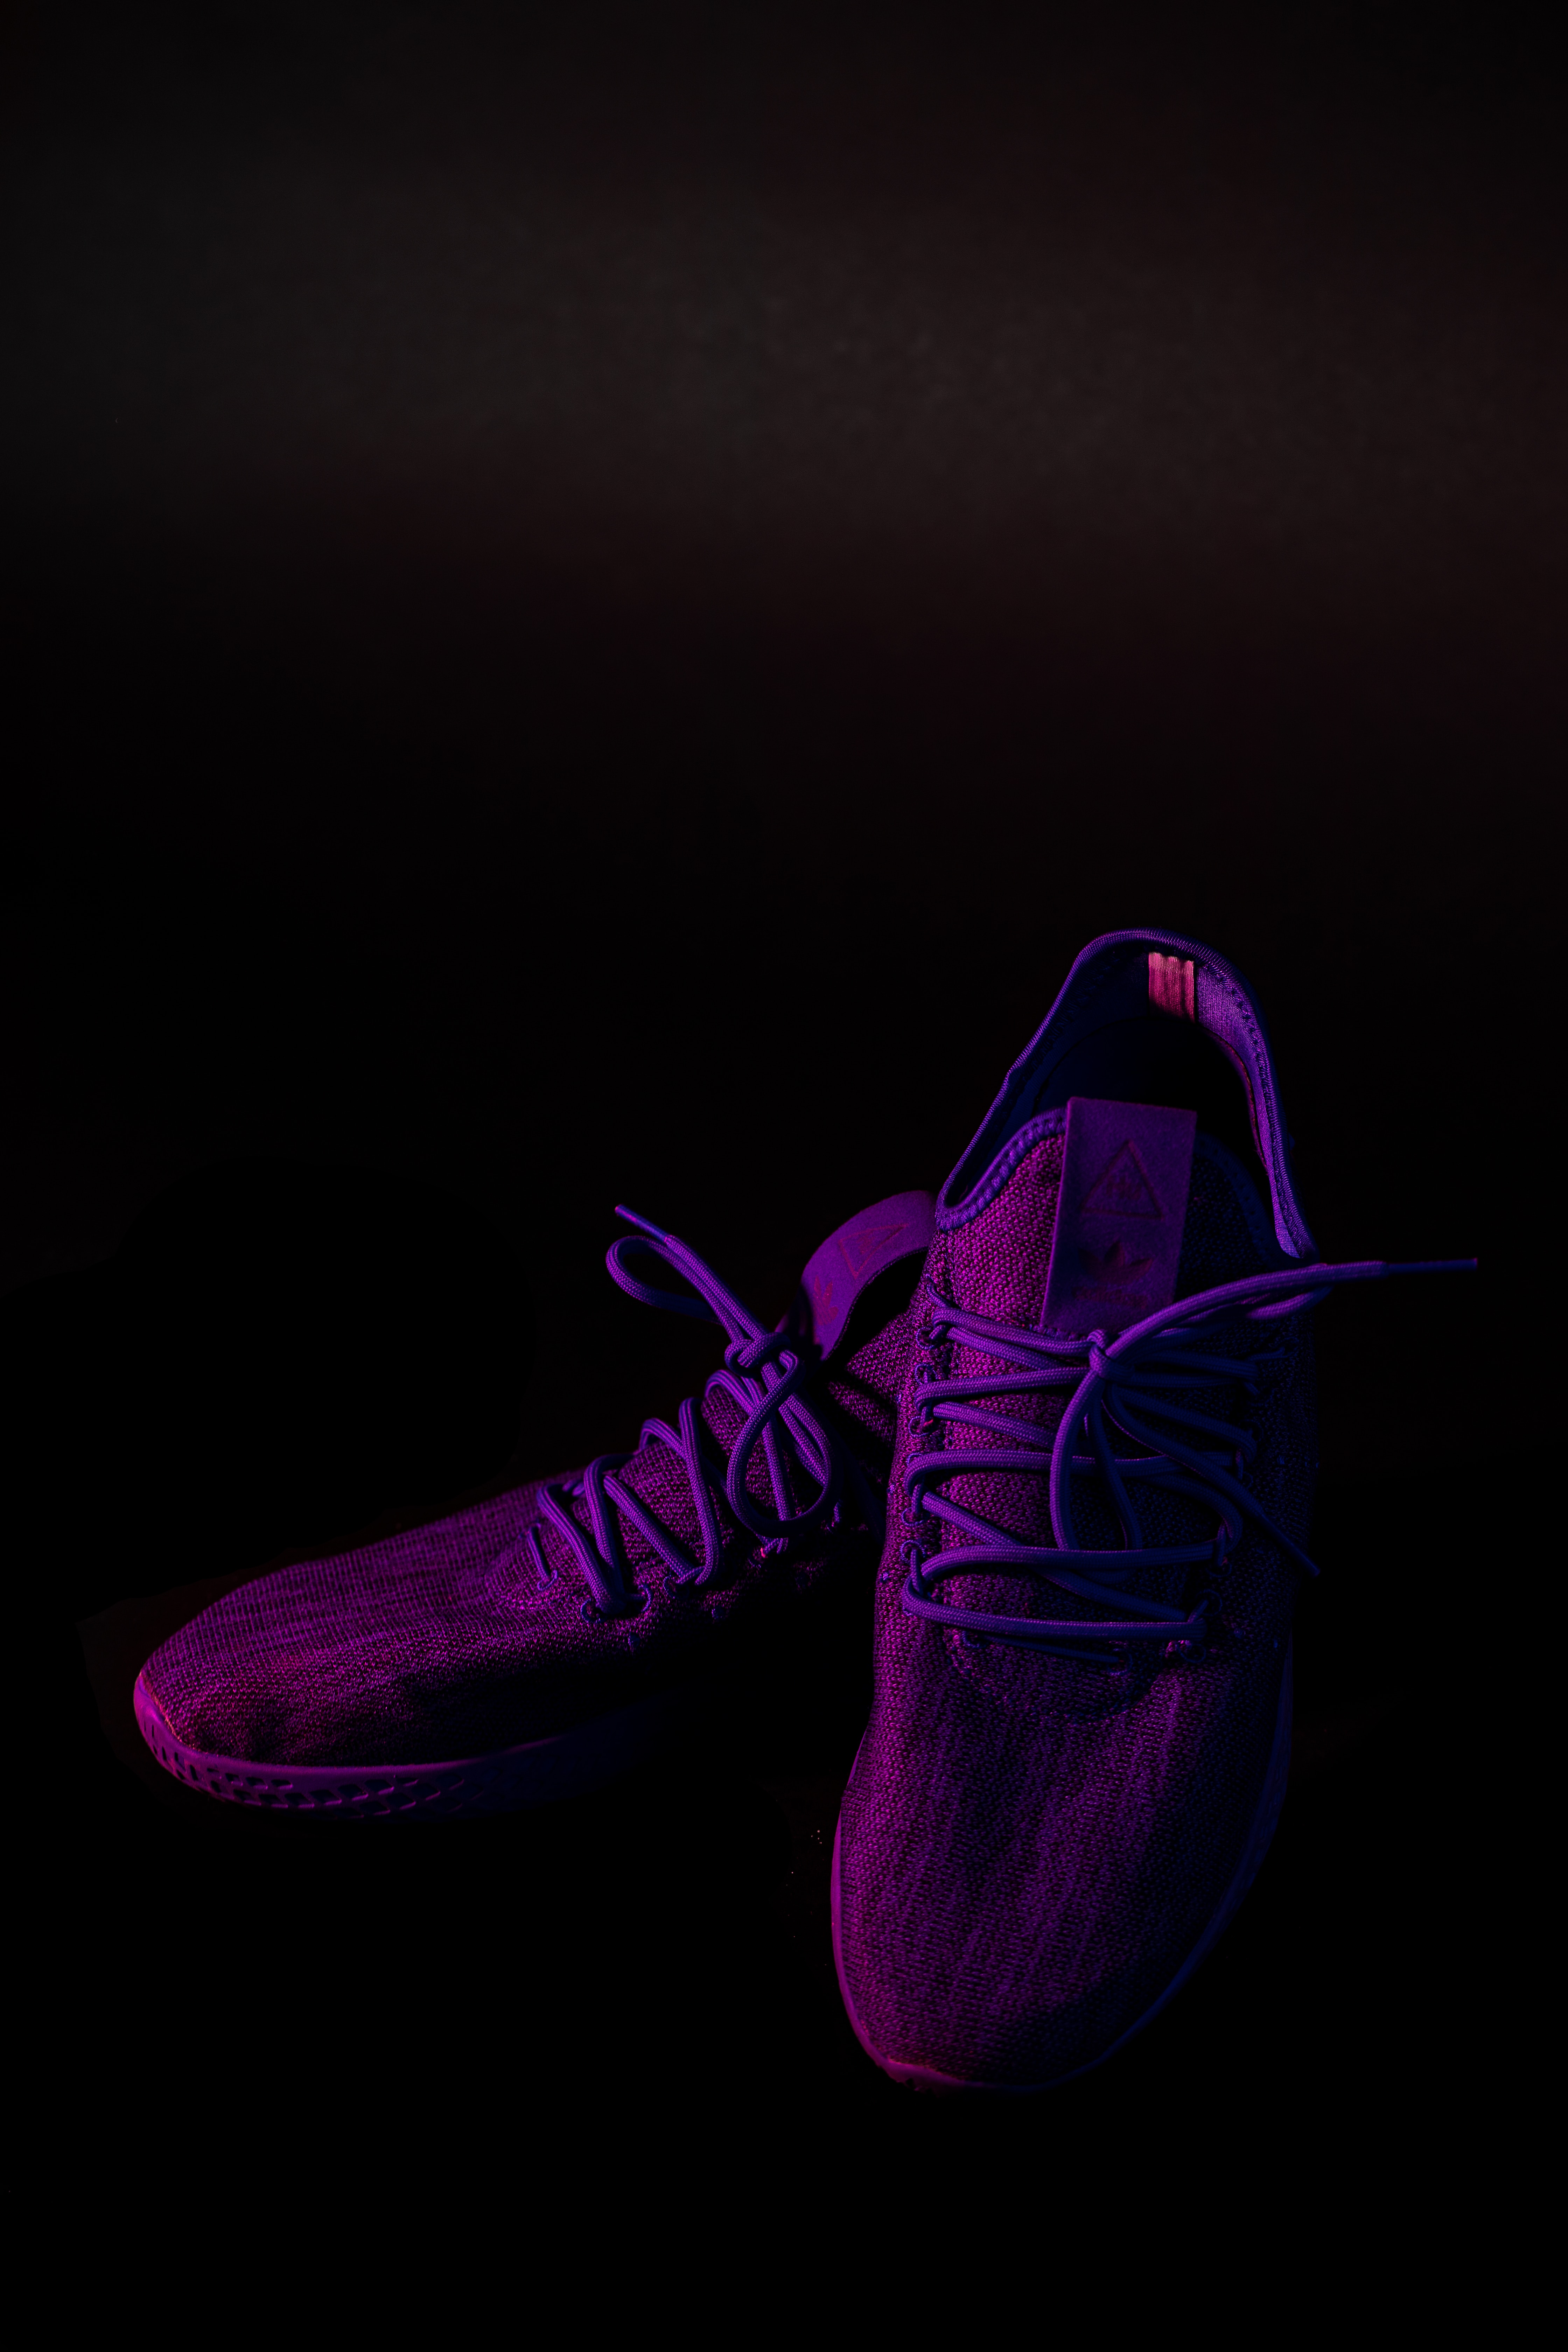 violet, dark, sneakers, purple, footwear